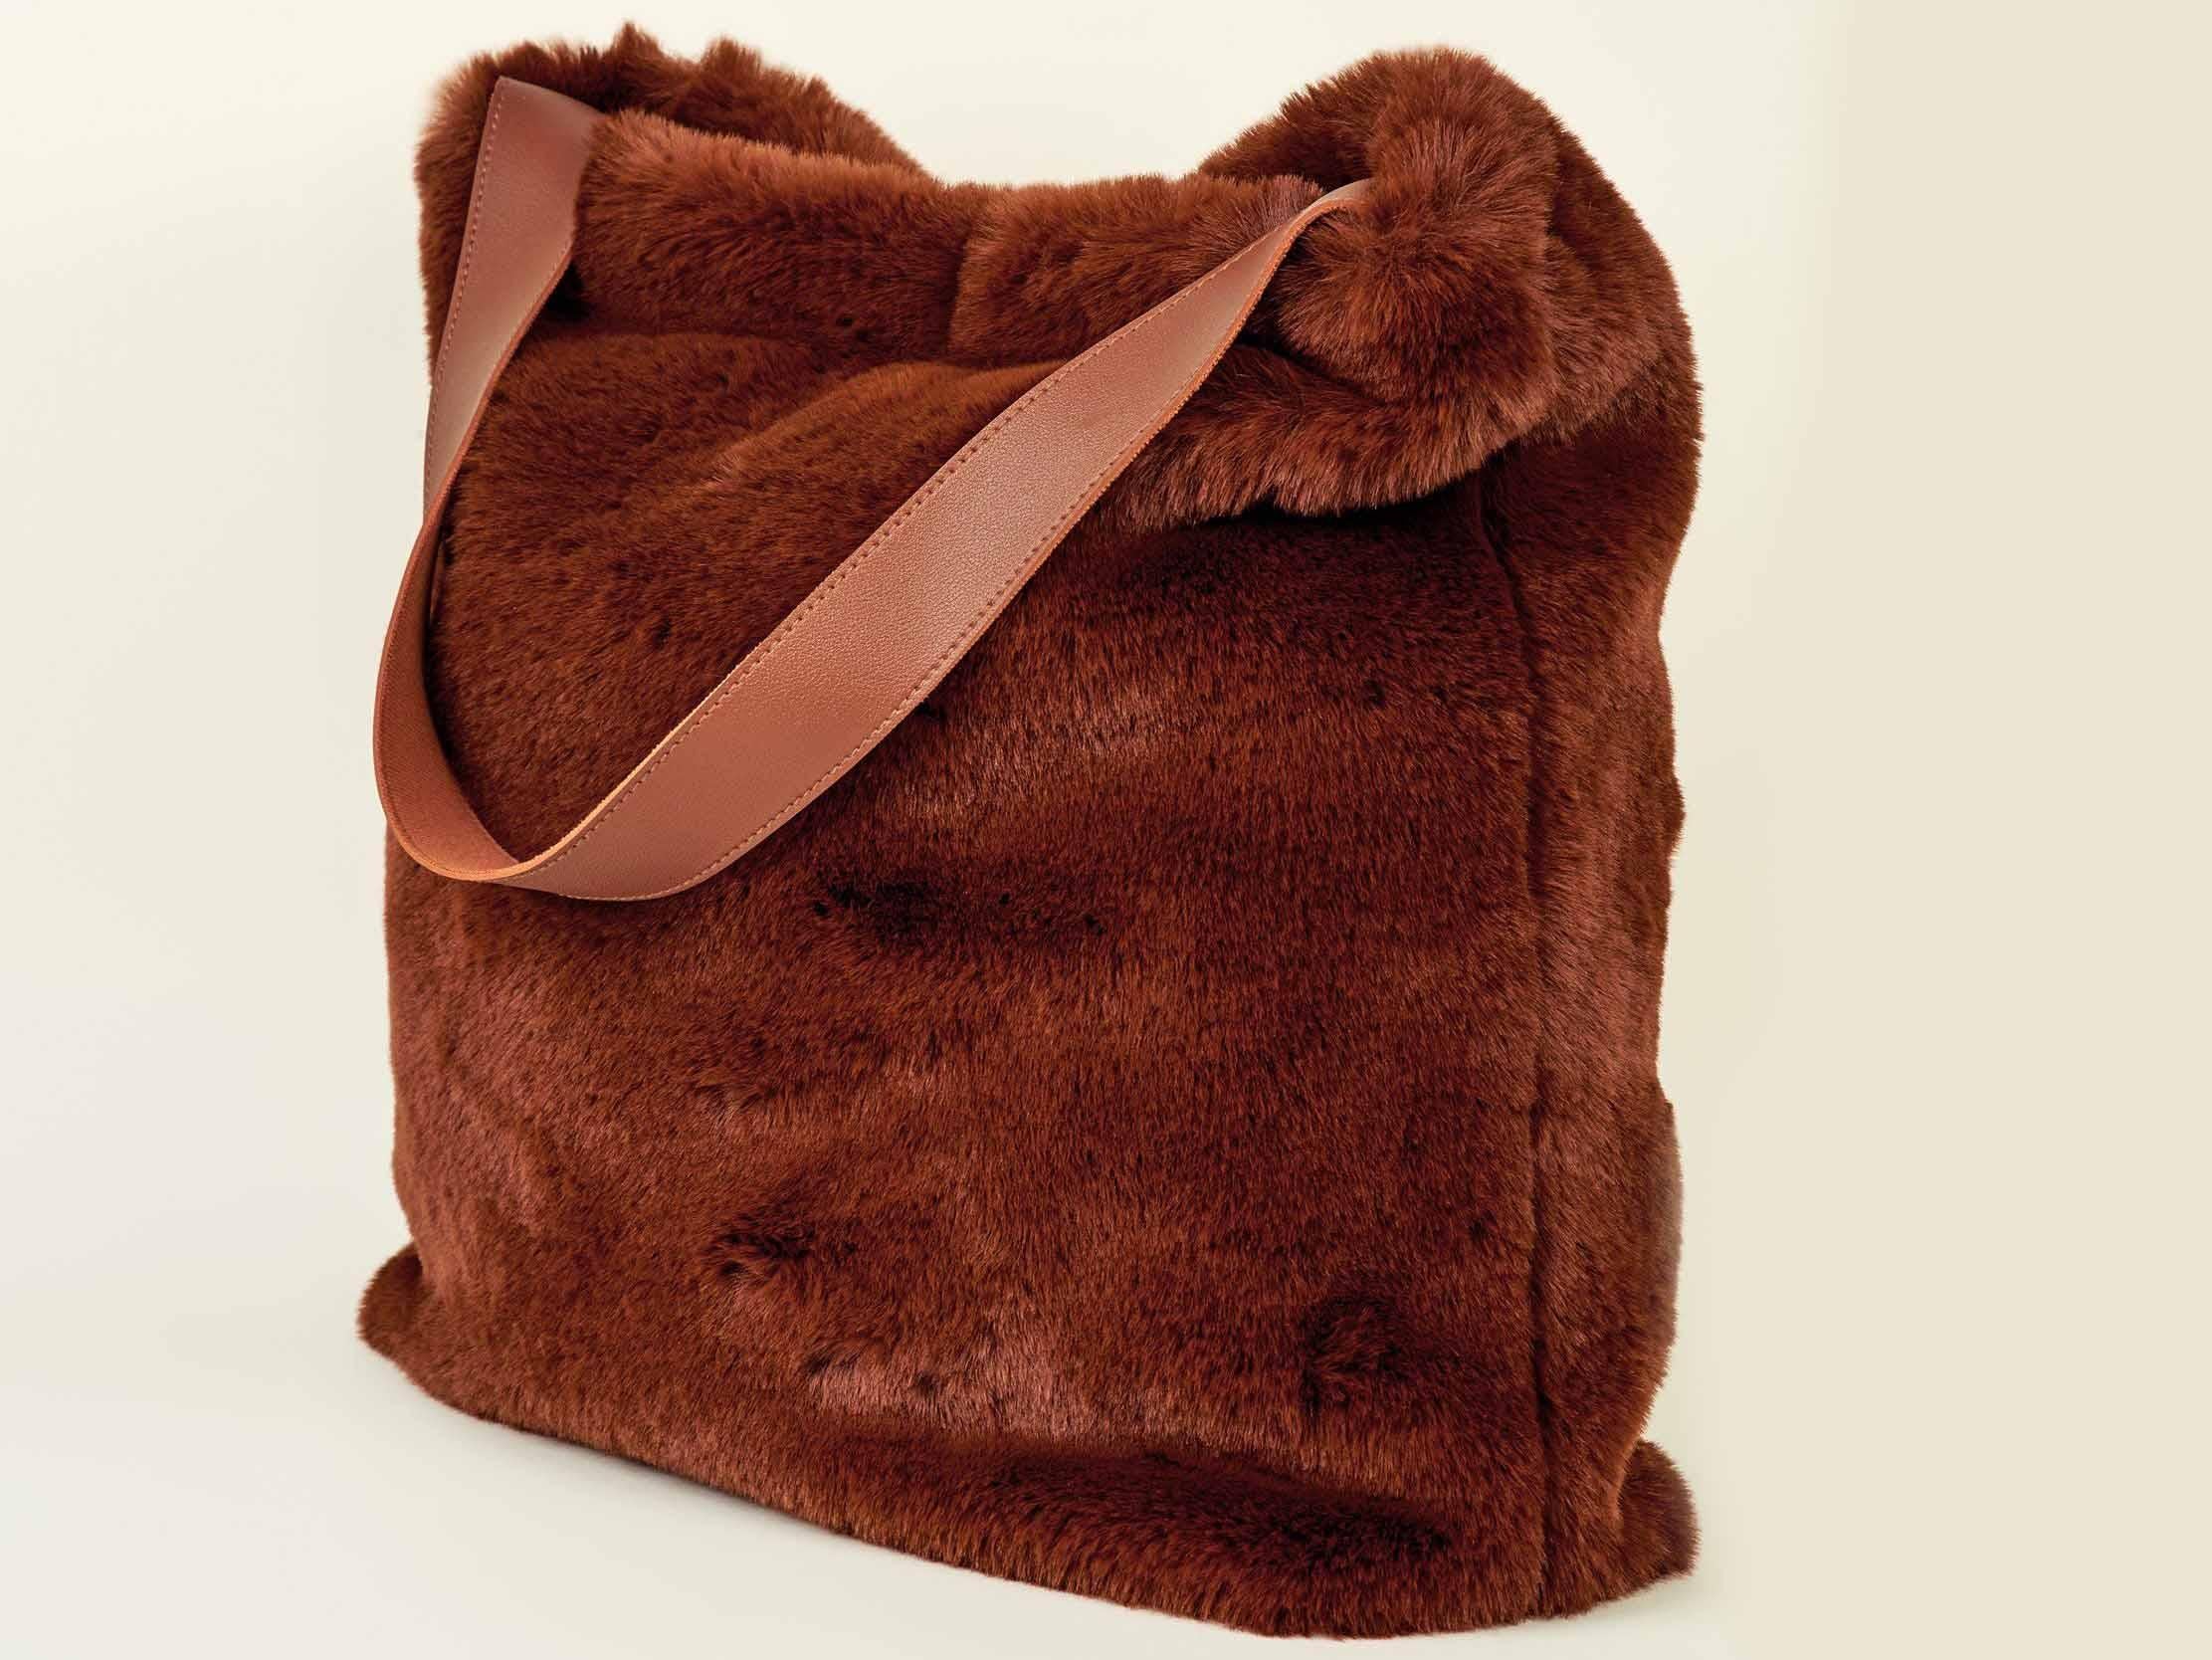 Tan Faux Fur Hobo Tote Bag, £29.99, New Look